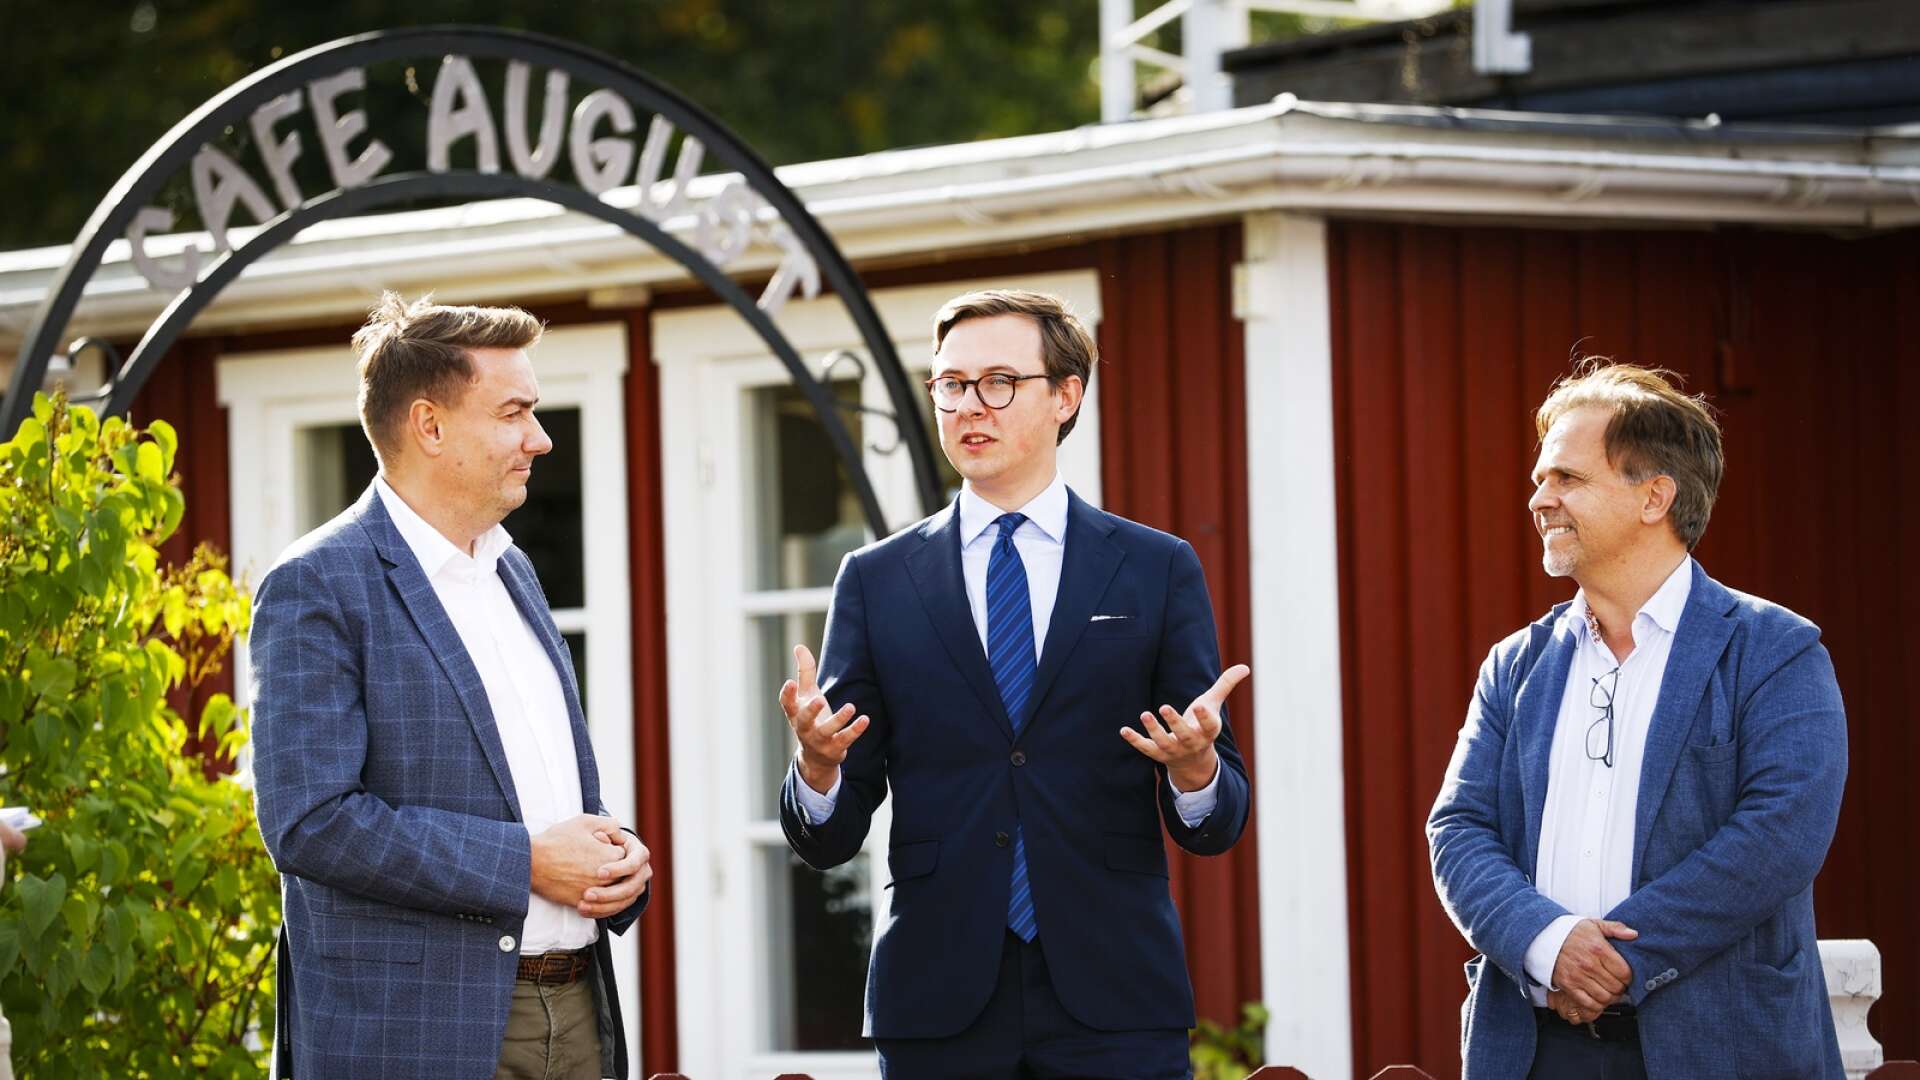 Café August säljs till Karlstads kommun. Den borgerliga oppositionen, Erik Nilsson (KD), Alexander Torin (M) och Niklas Wikström (L), som inte visste om köpet är nu kritiska.